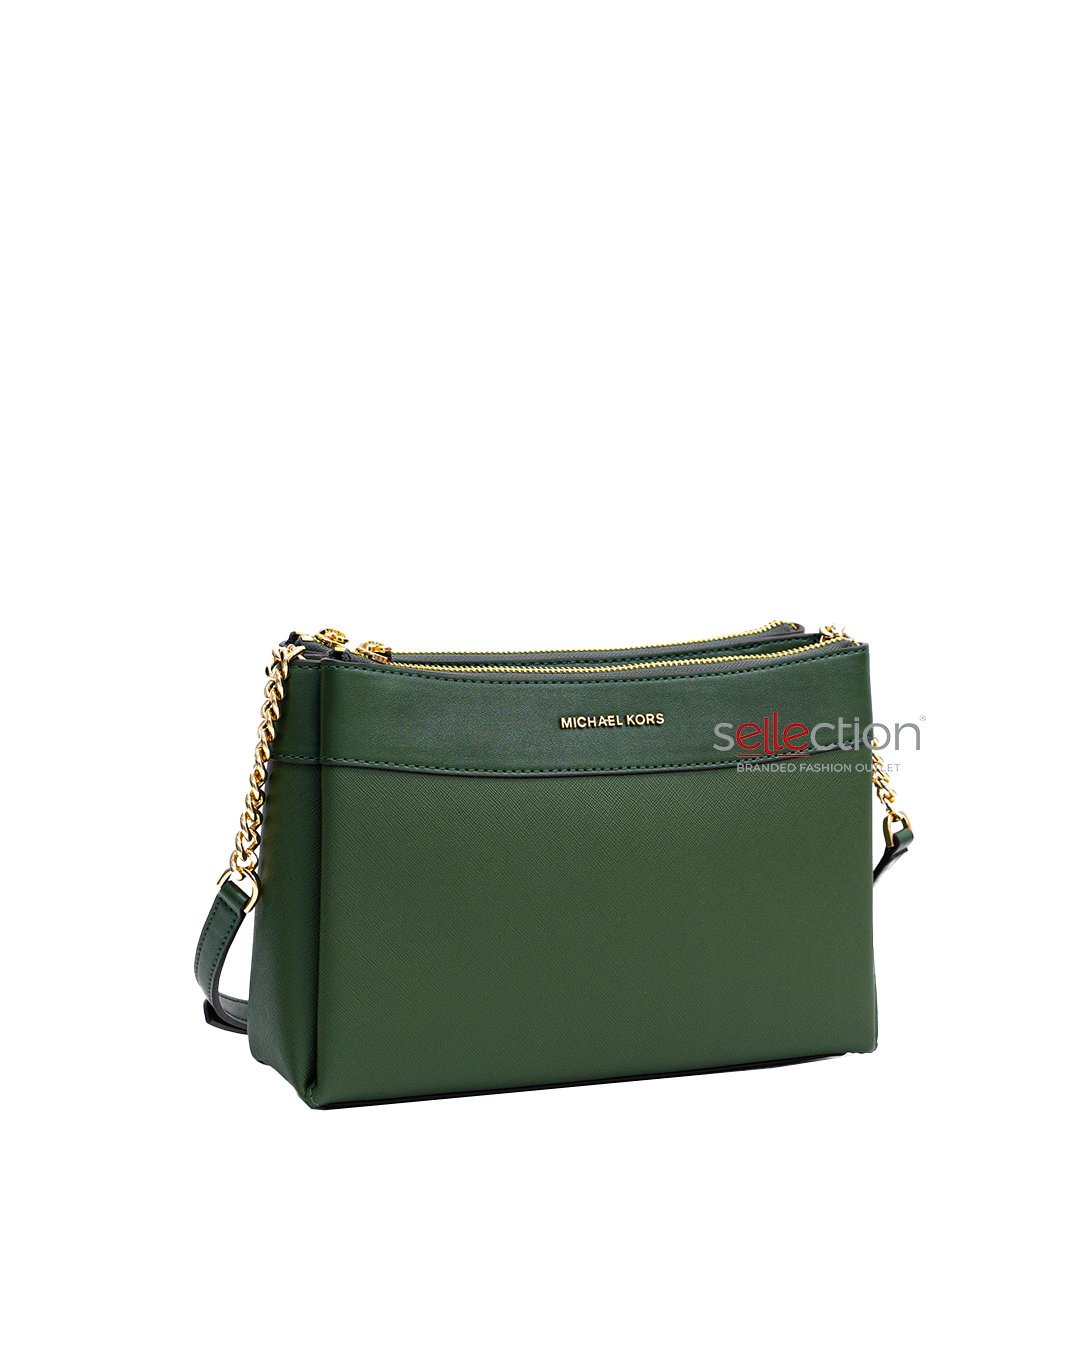 Michael Kors Green Leather Satchel Handbag Crossbody Bag + Card Holder  Wallet MK LIGHT SAGE - Michael Kors bag - | Fash Brands